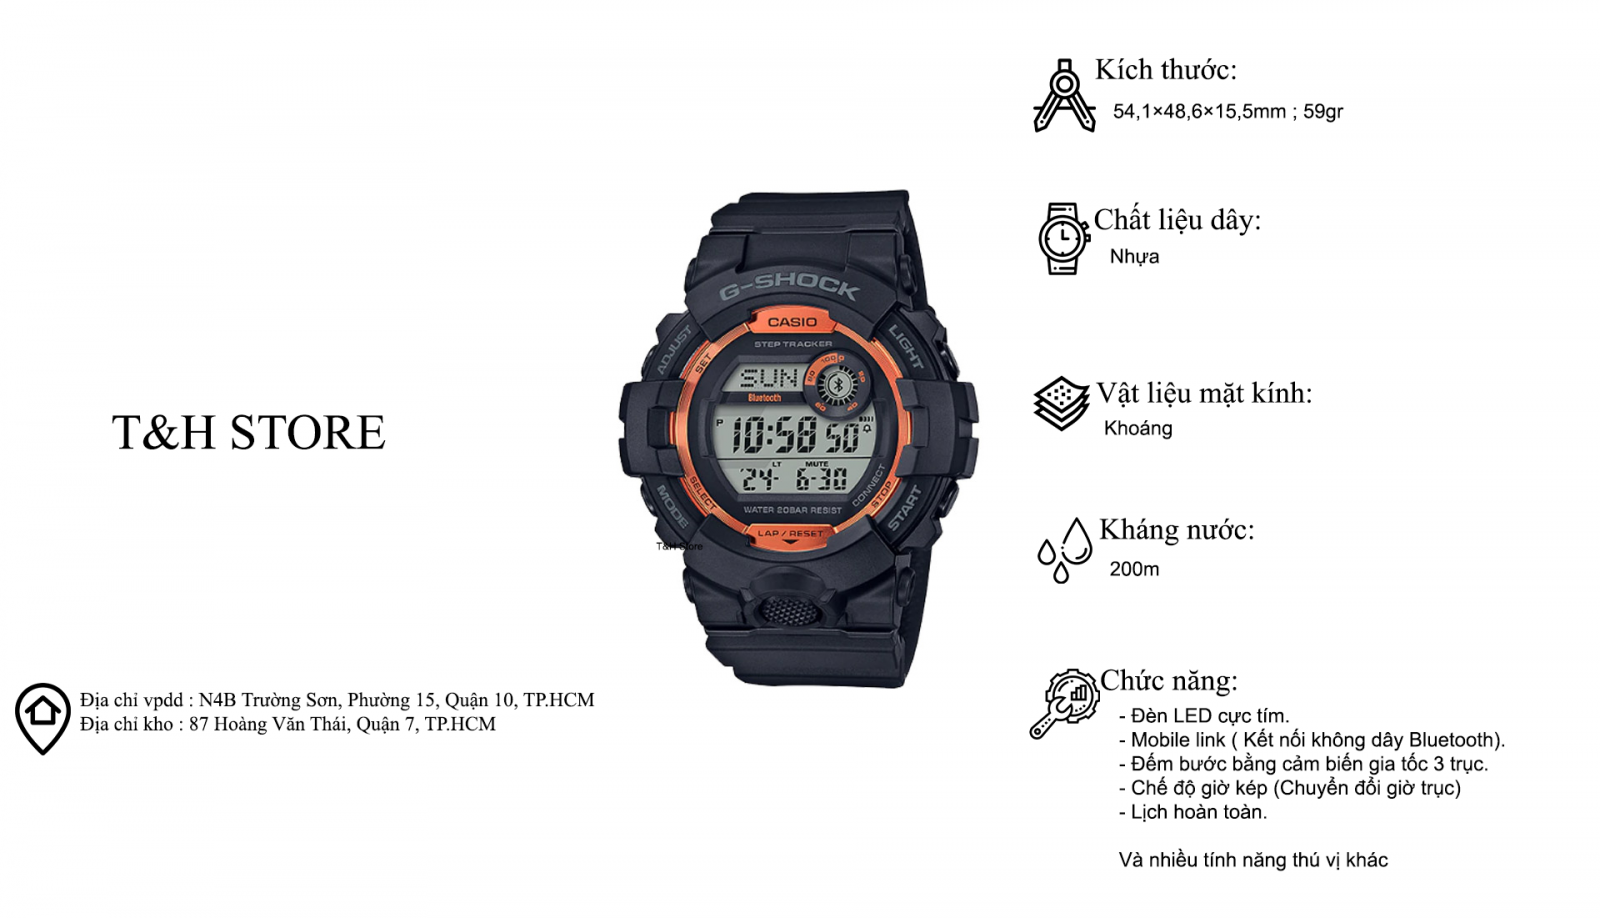 T&H Store - Chuyên đồng hồ Casio chính hãng, xách tay - 22